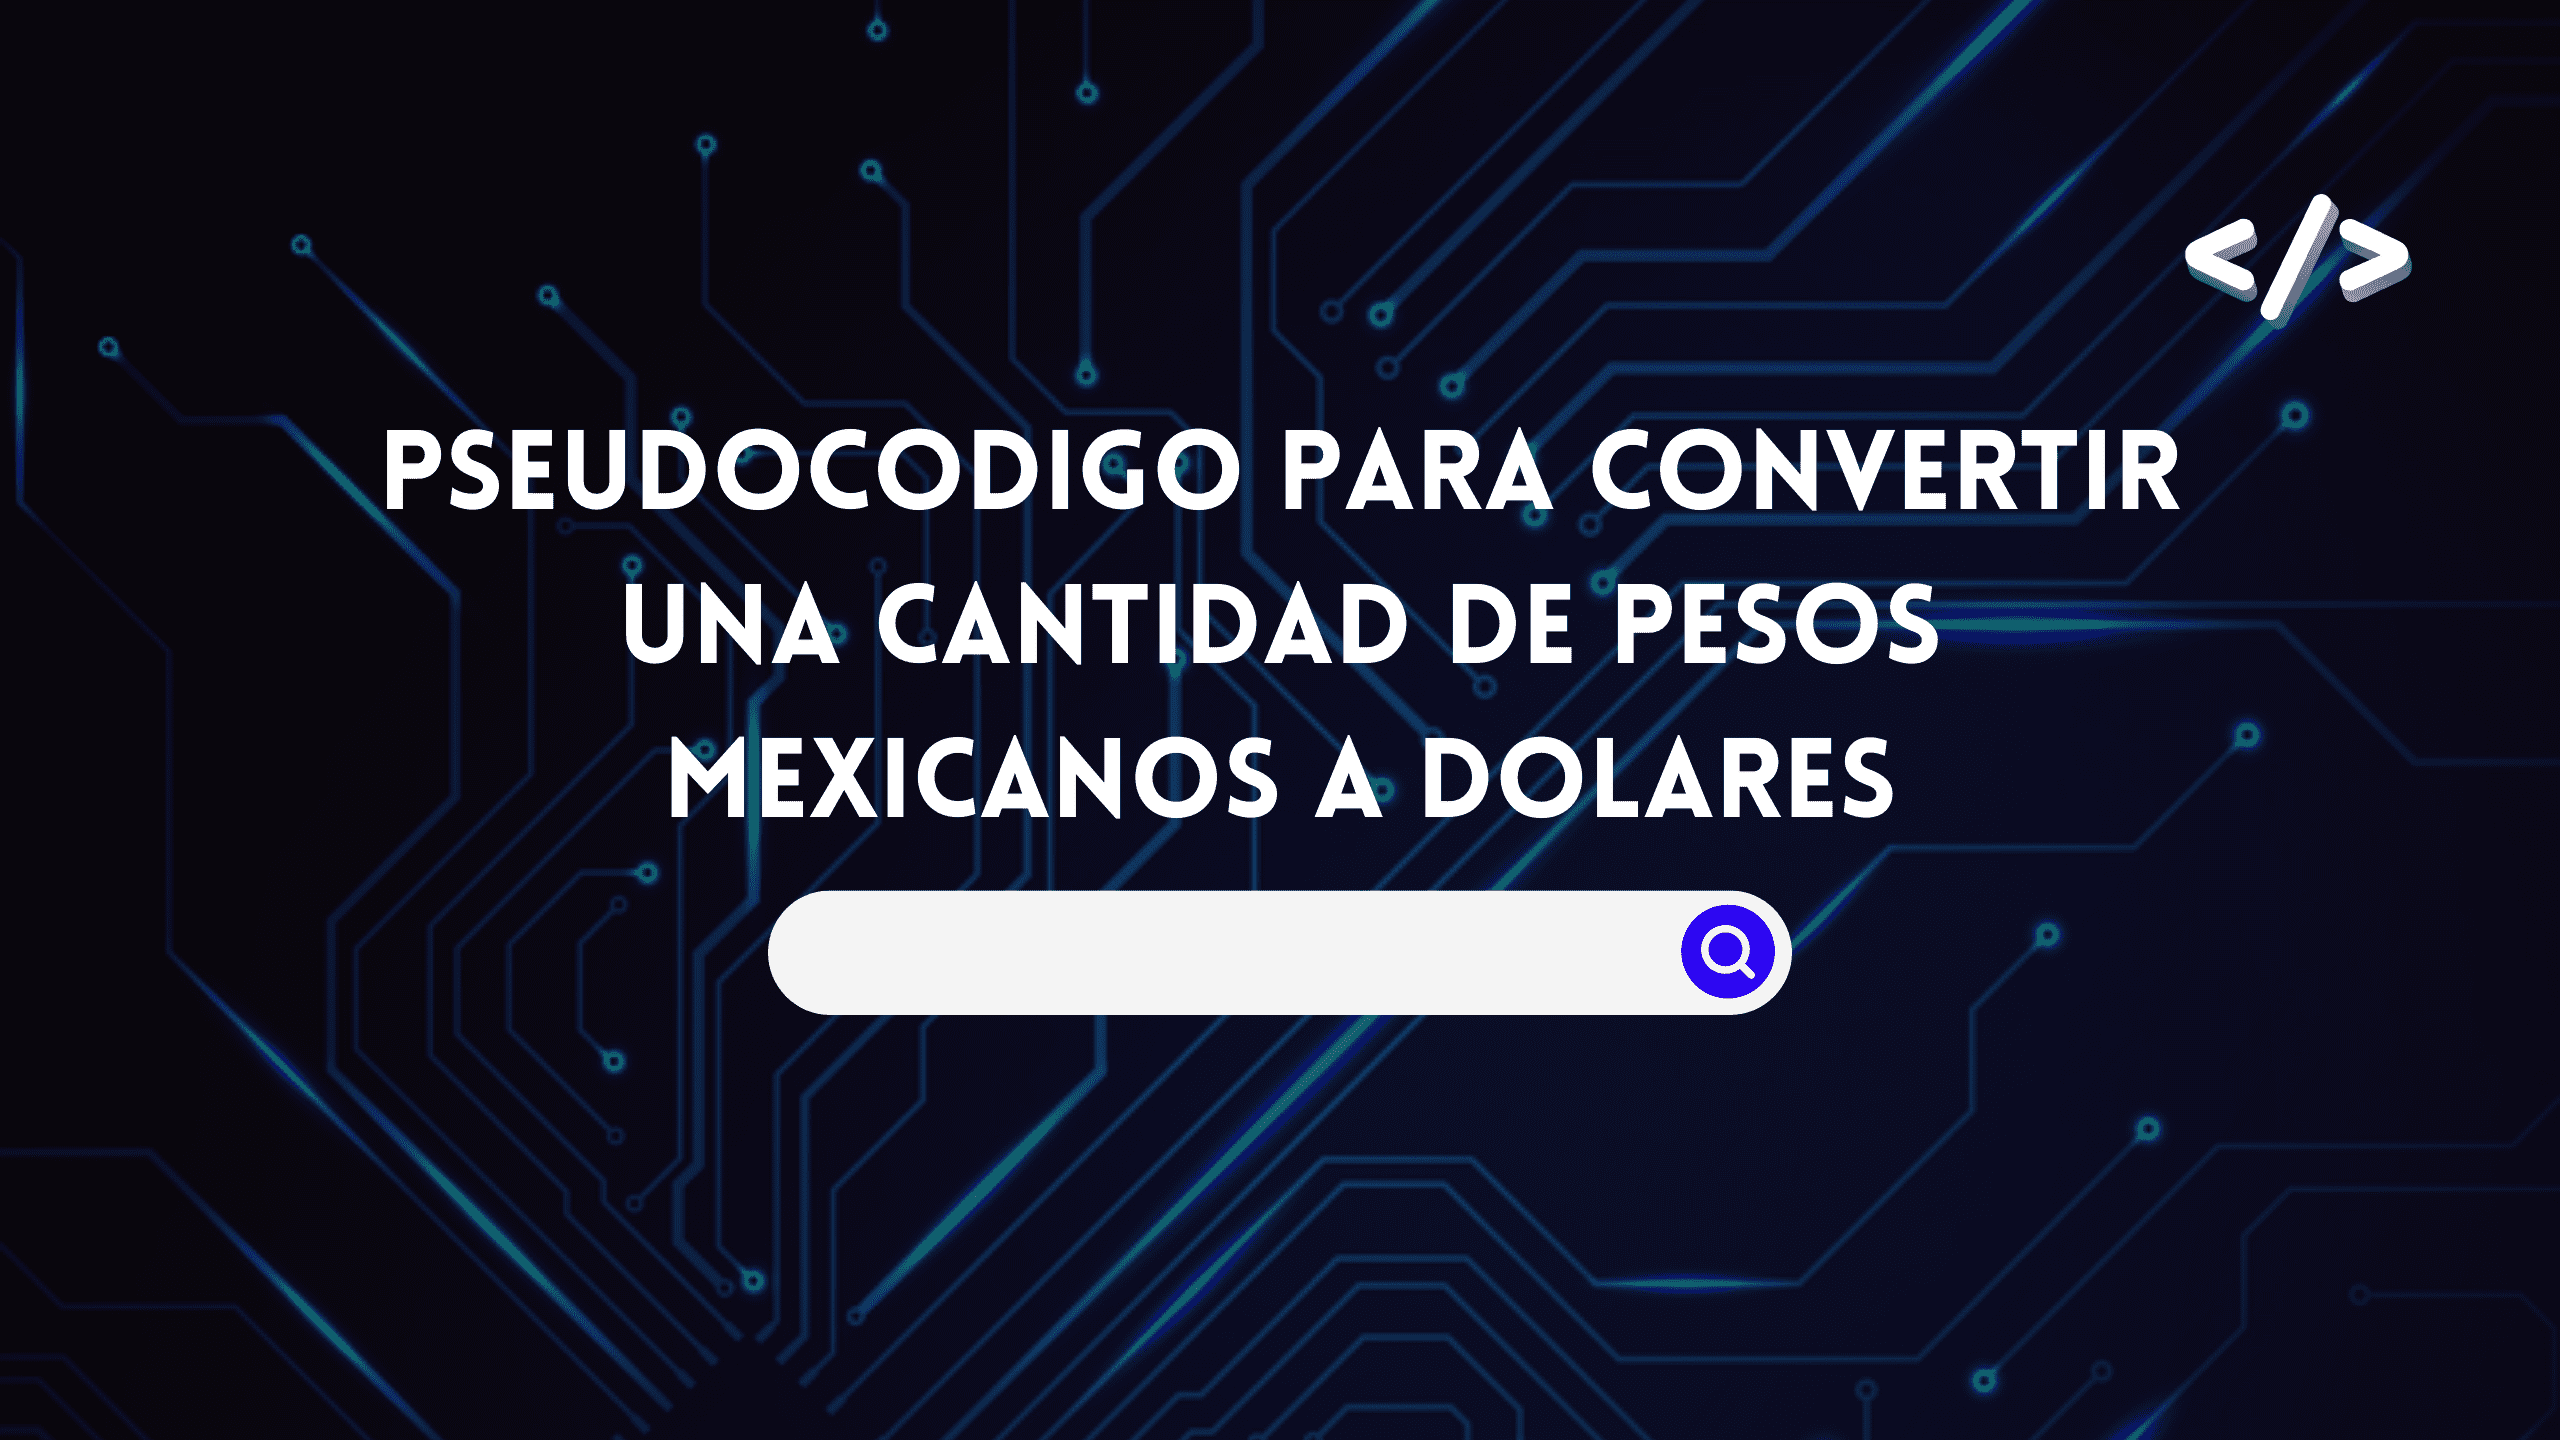 Pseudocodigo para convertir una cantidad de pesos mexicanos a dolares